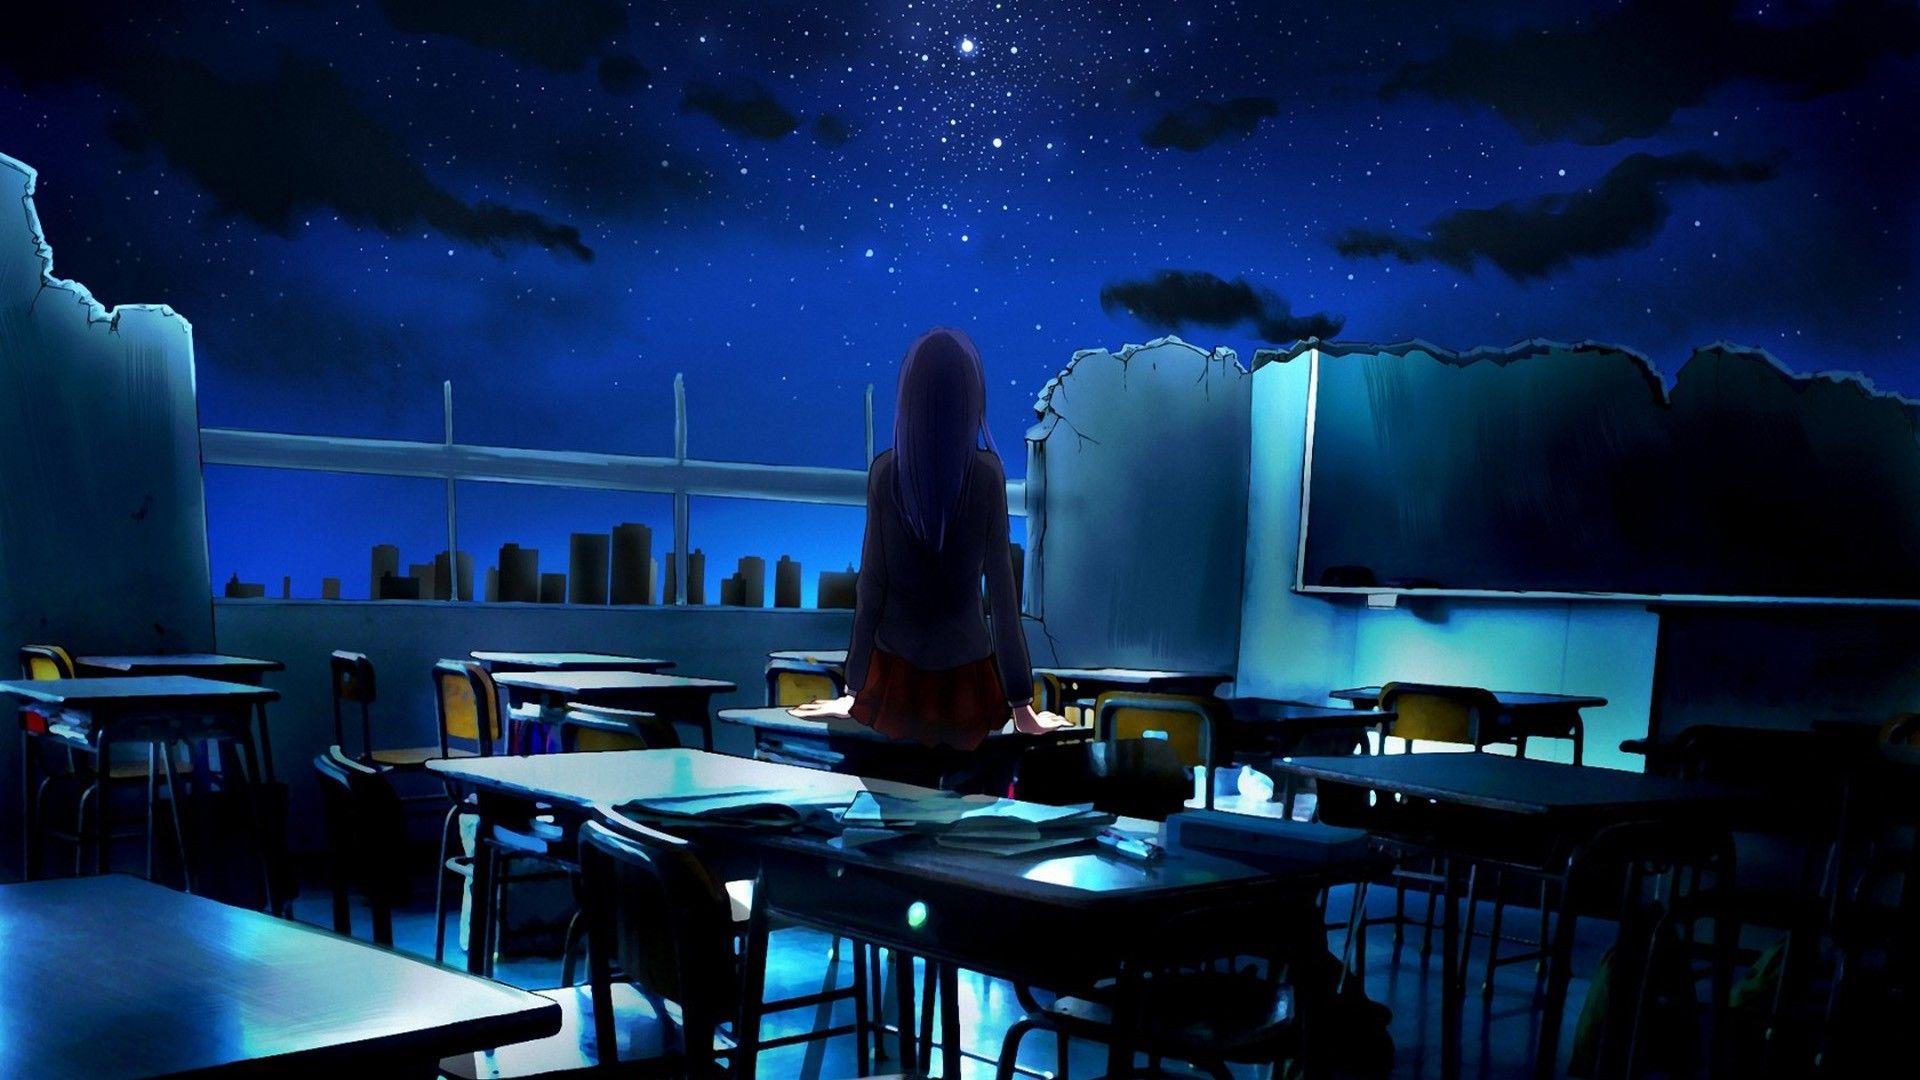 Hình nền máy tính để bàn 1920x1080 Anime girl cầu nguyện trong lớp học đổ nát dưới bầu trời đêm đen